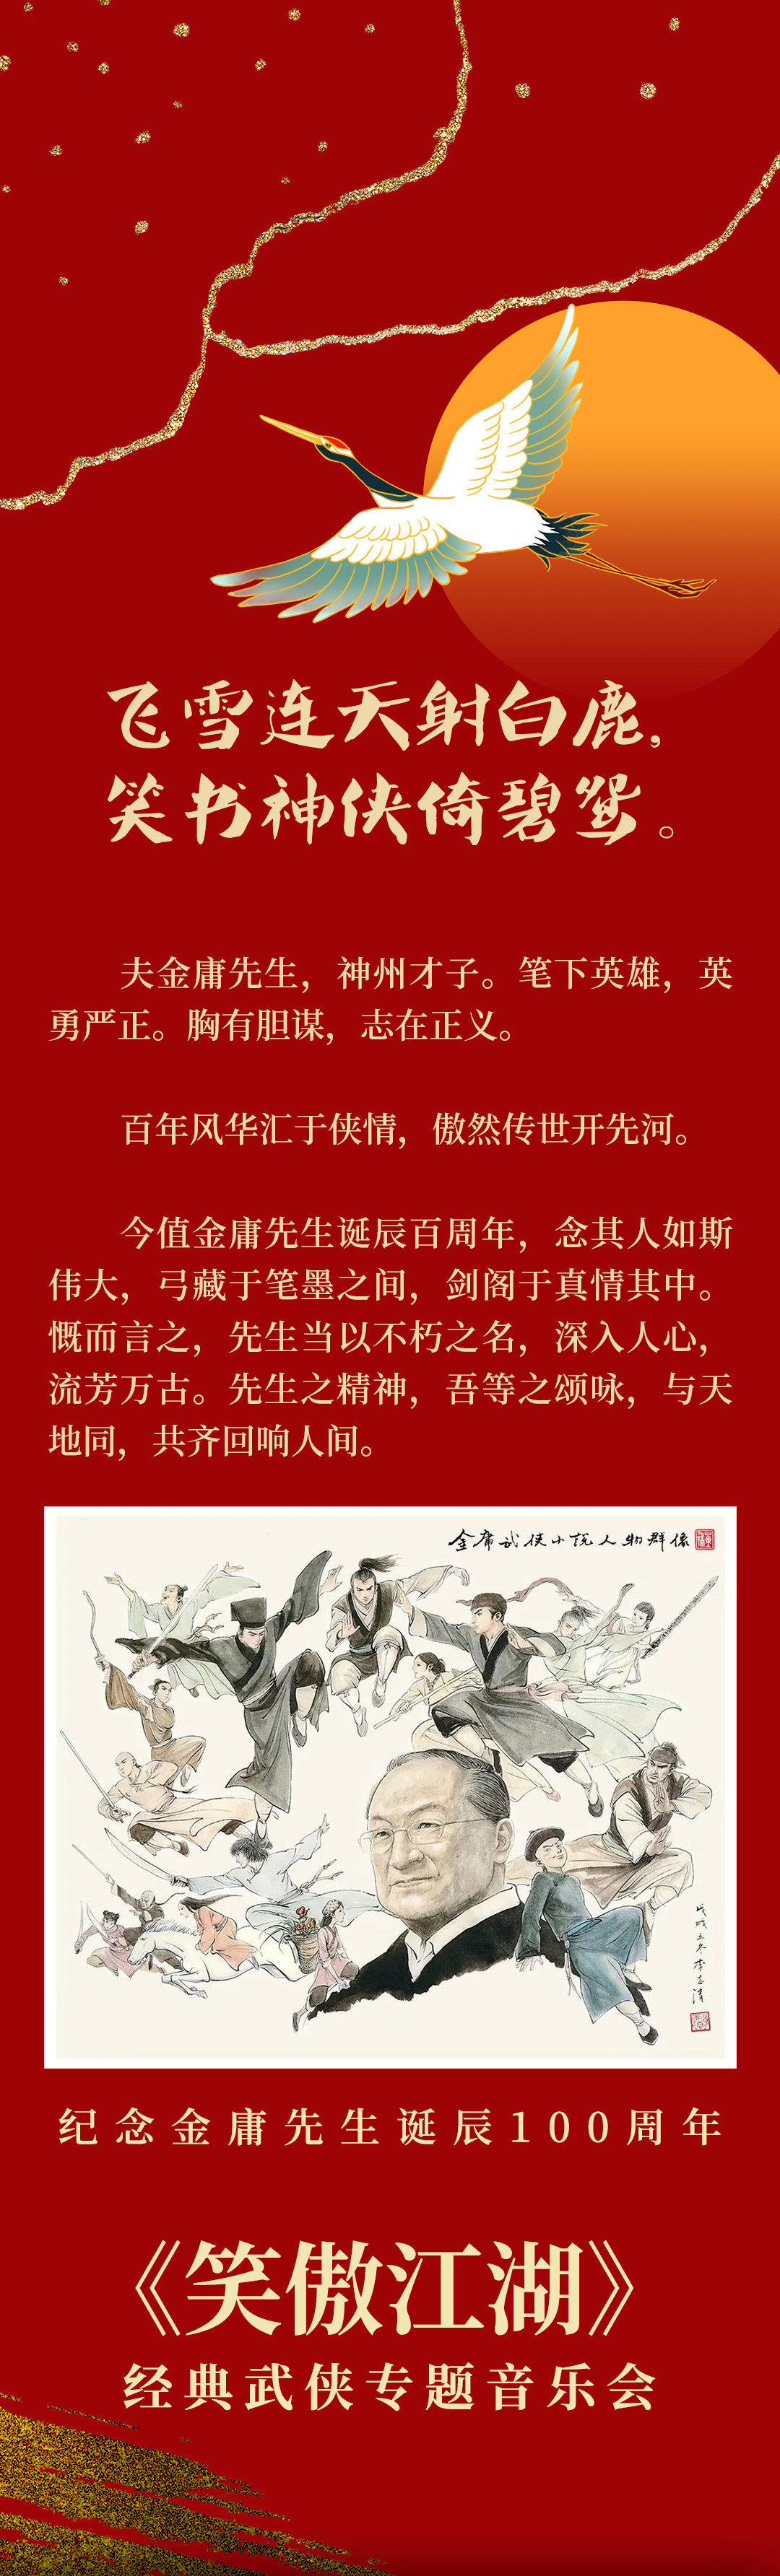 【珠海站】笑傲江湖——纪念金庸先生诞辰100周年·经典武侠专题音乐会